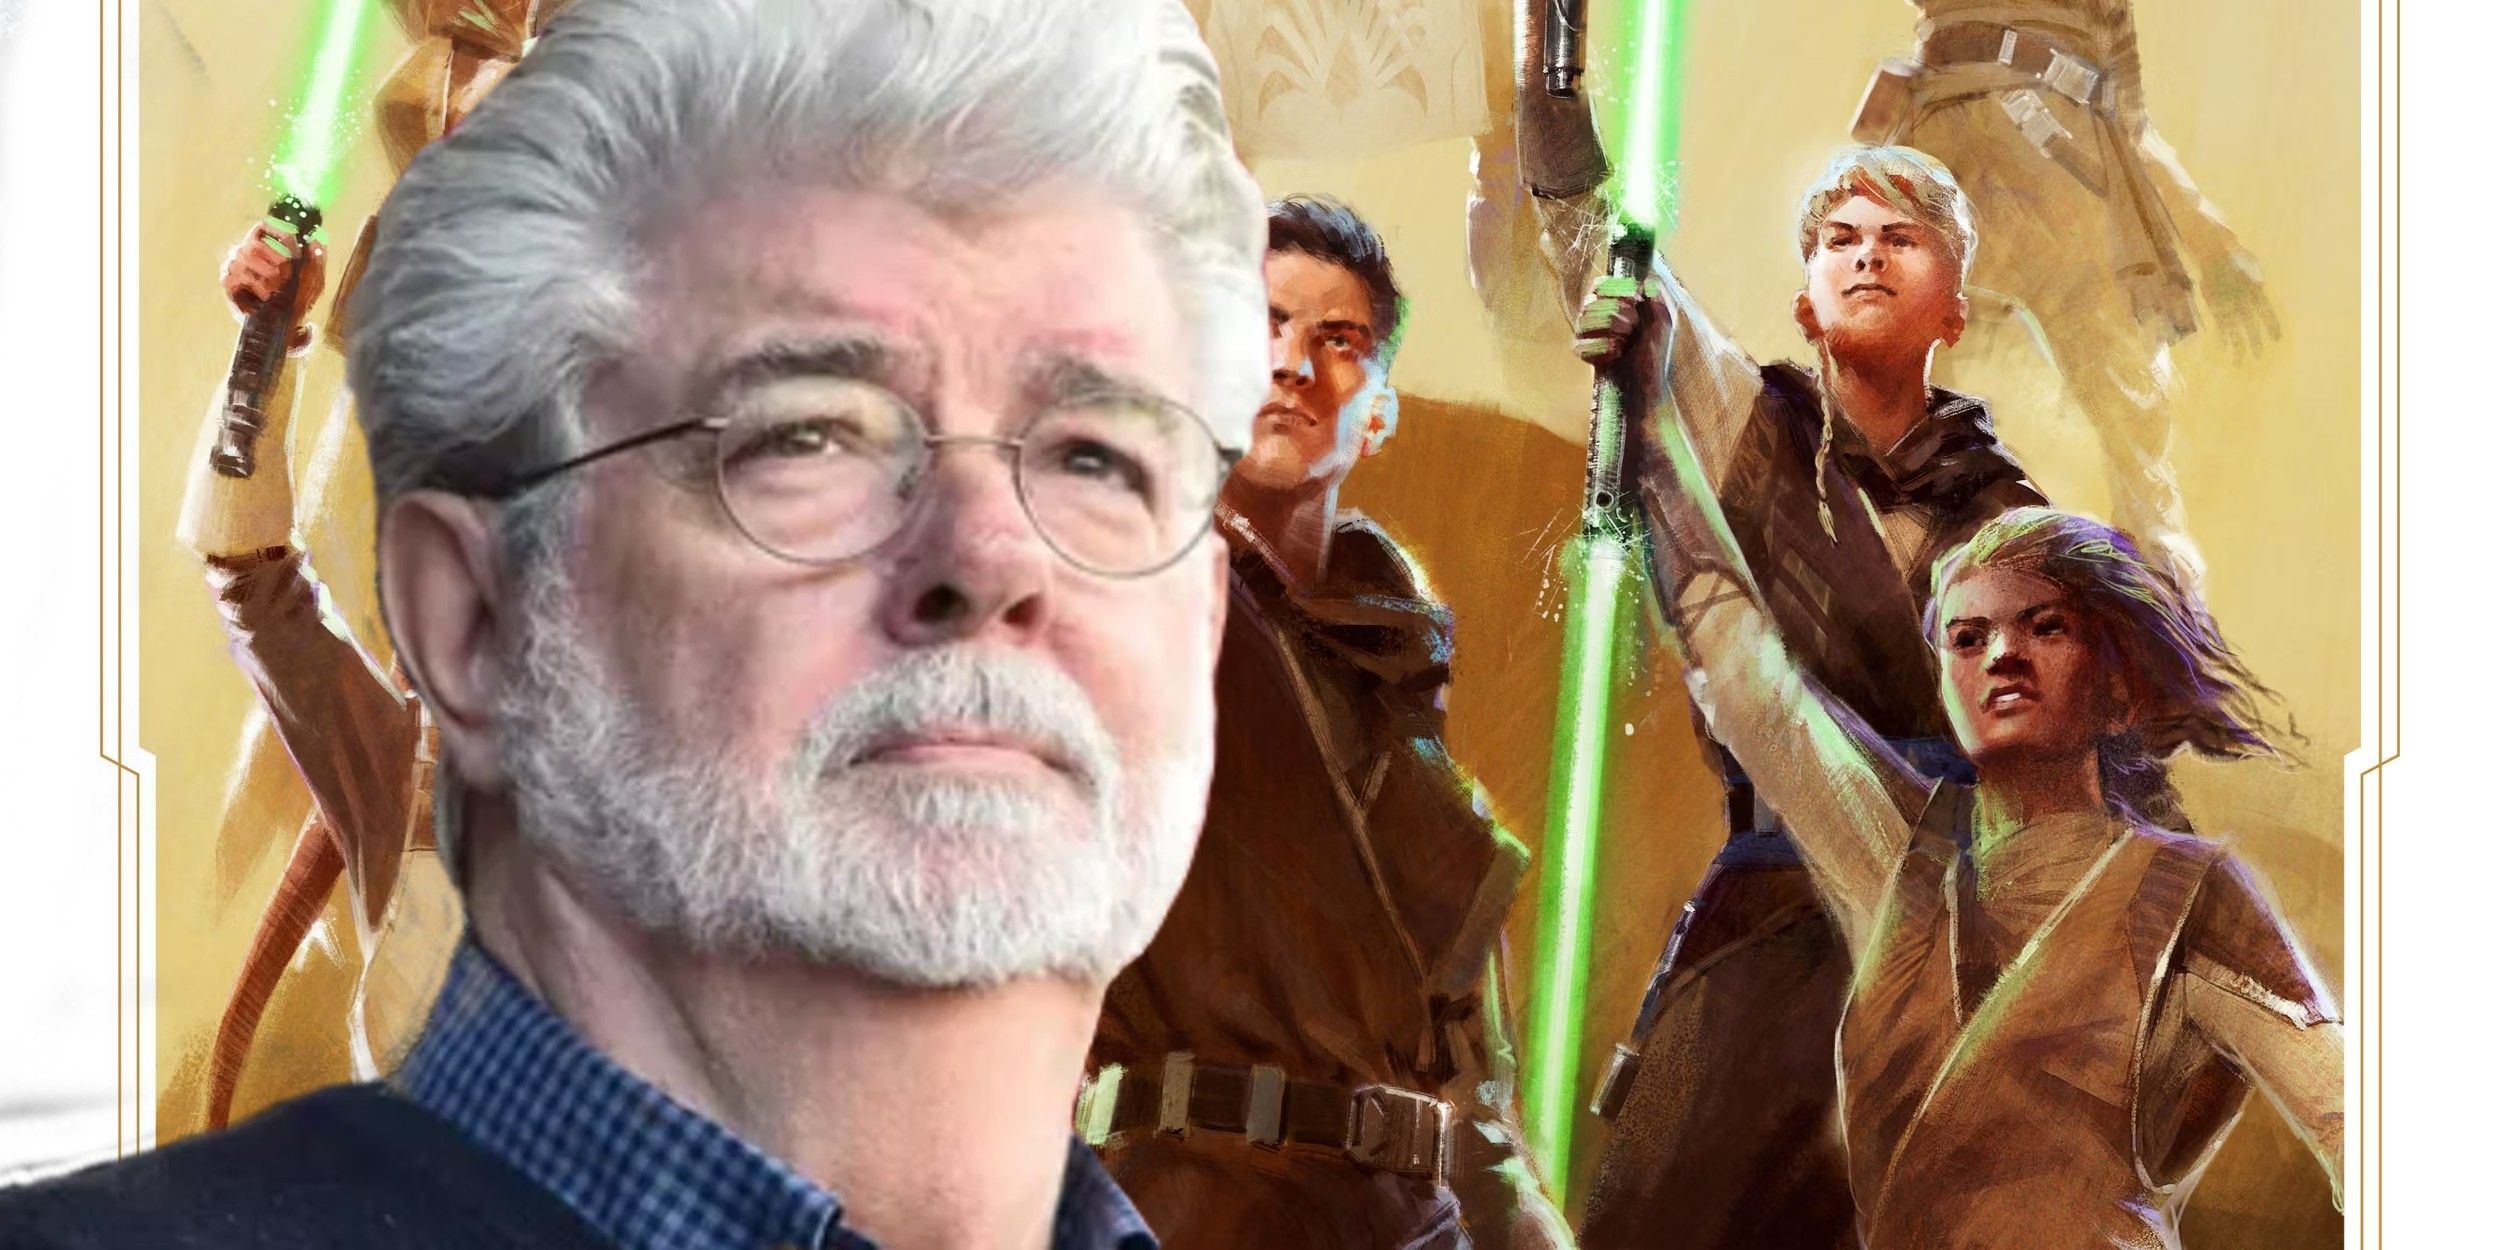 La próxima precuela de Star Wars de Disney rompe por completo la visión de Lucas